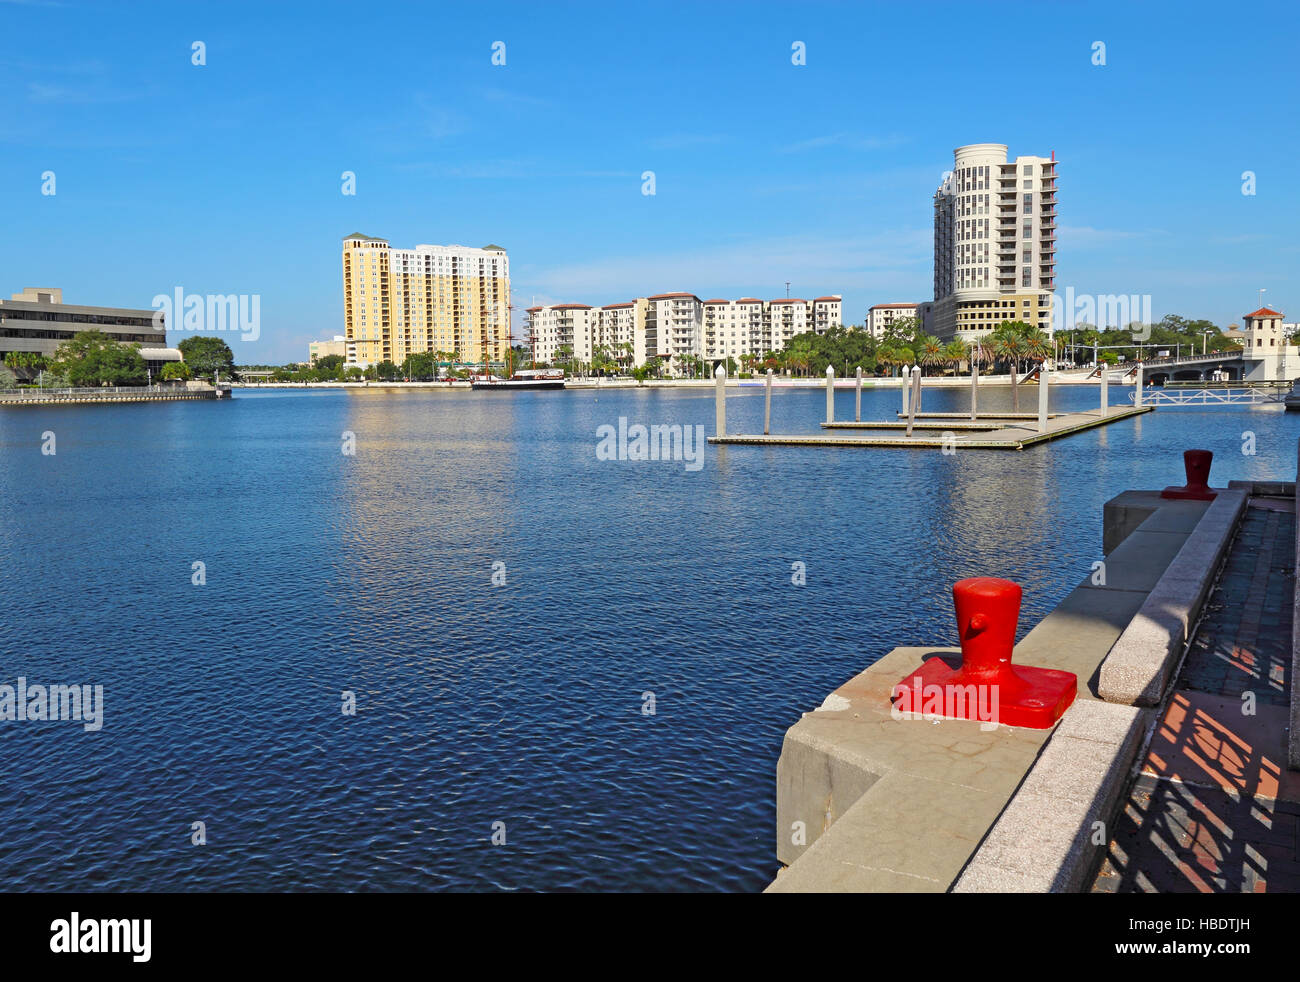 Horizonte parcial de Tampa, Florida, con apartamentos y condominios, en la confluencia de Seddon Canal y el río Hillsborough vistos desde Foto de stock